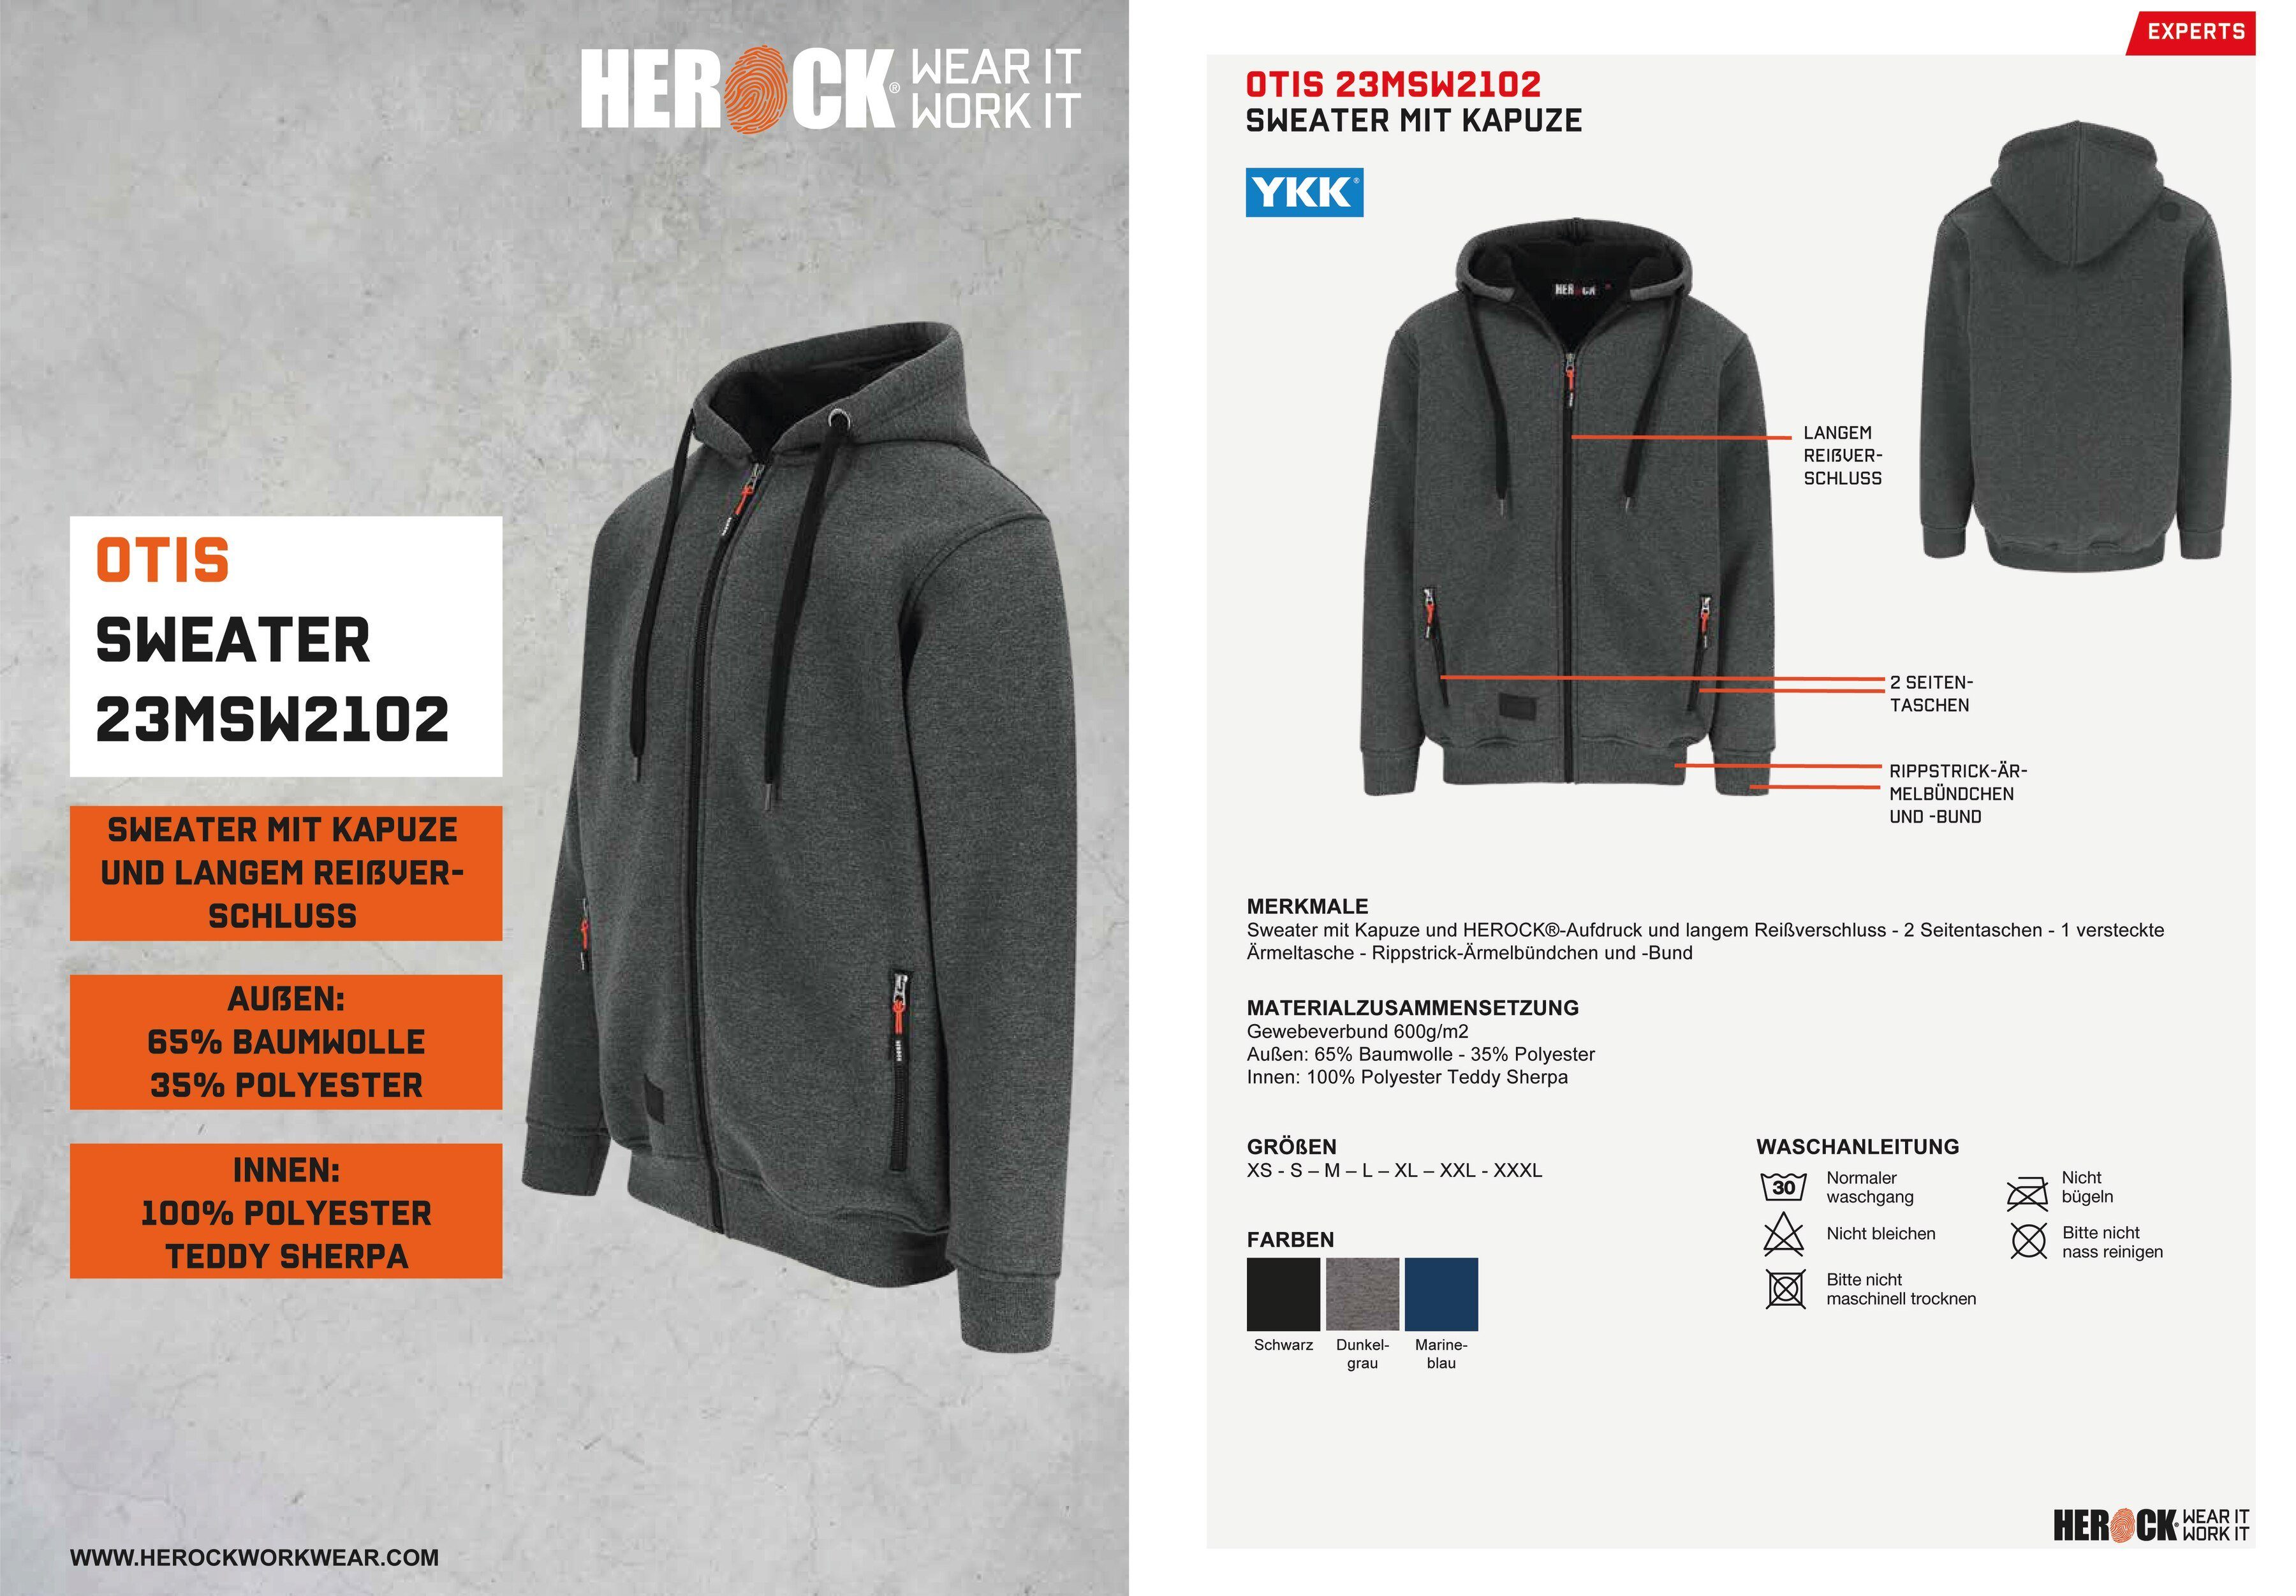 Reißverschluβ, Kapuze, angenehm langem grau Sweater Herock Mit und warm HEROCK®-Aufdruck, OTIS